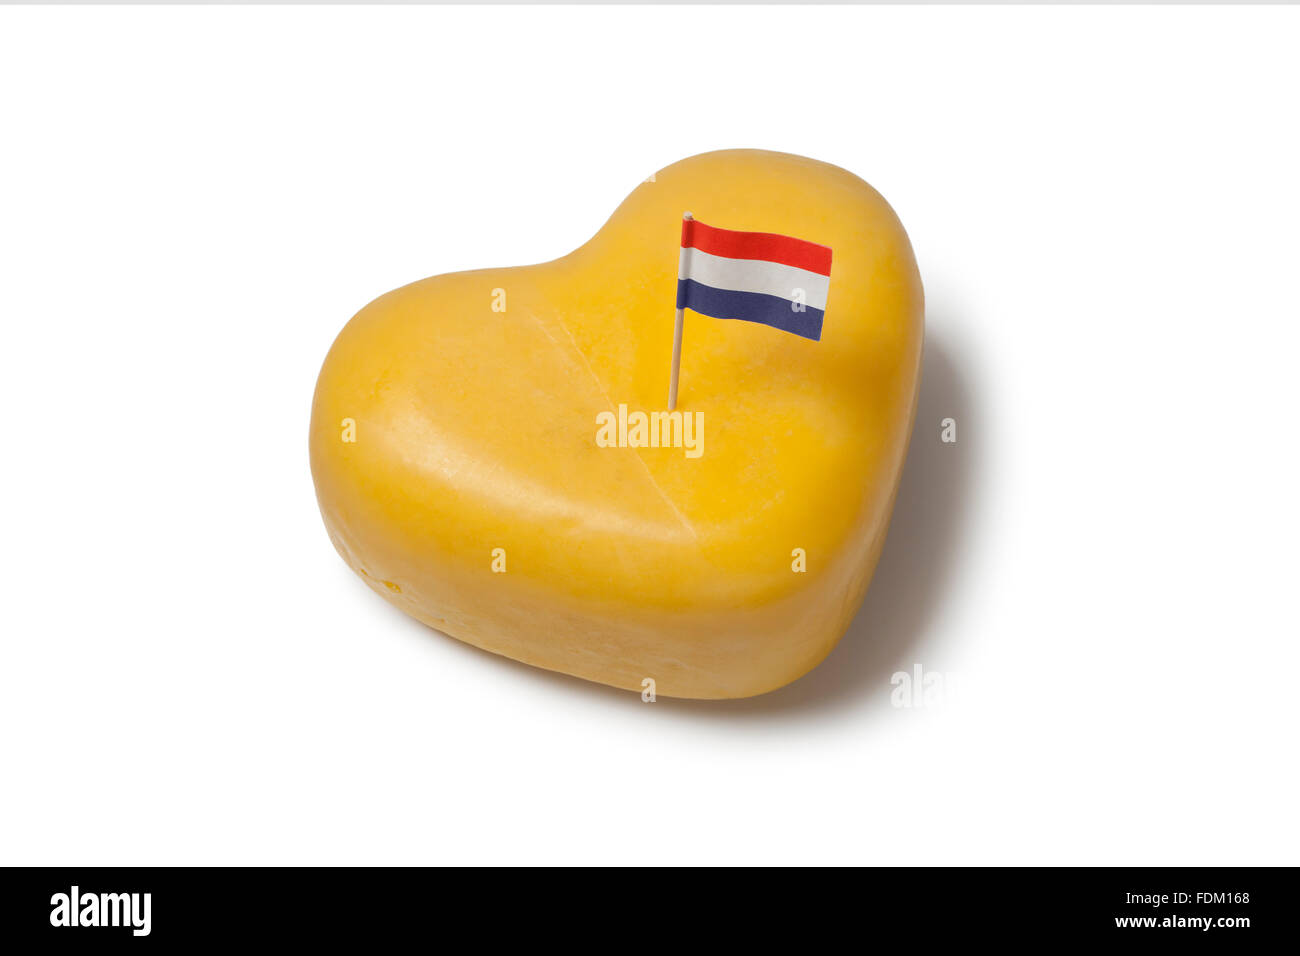 Forme du cœur de fromage Gouda avec pavillon néerlandais sur fond blanc Banque D'Images